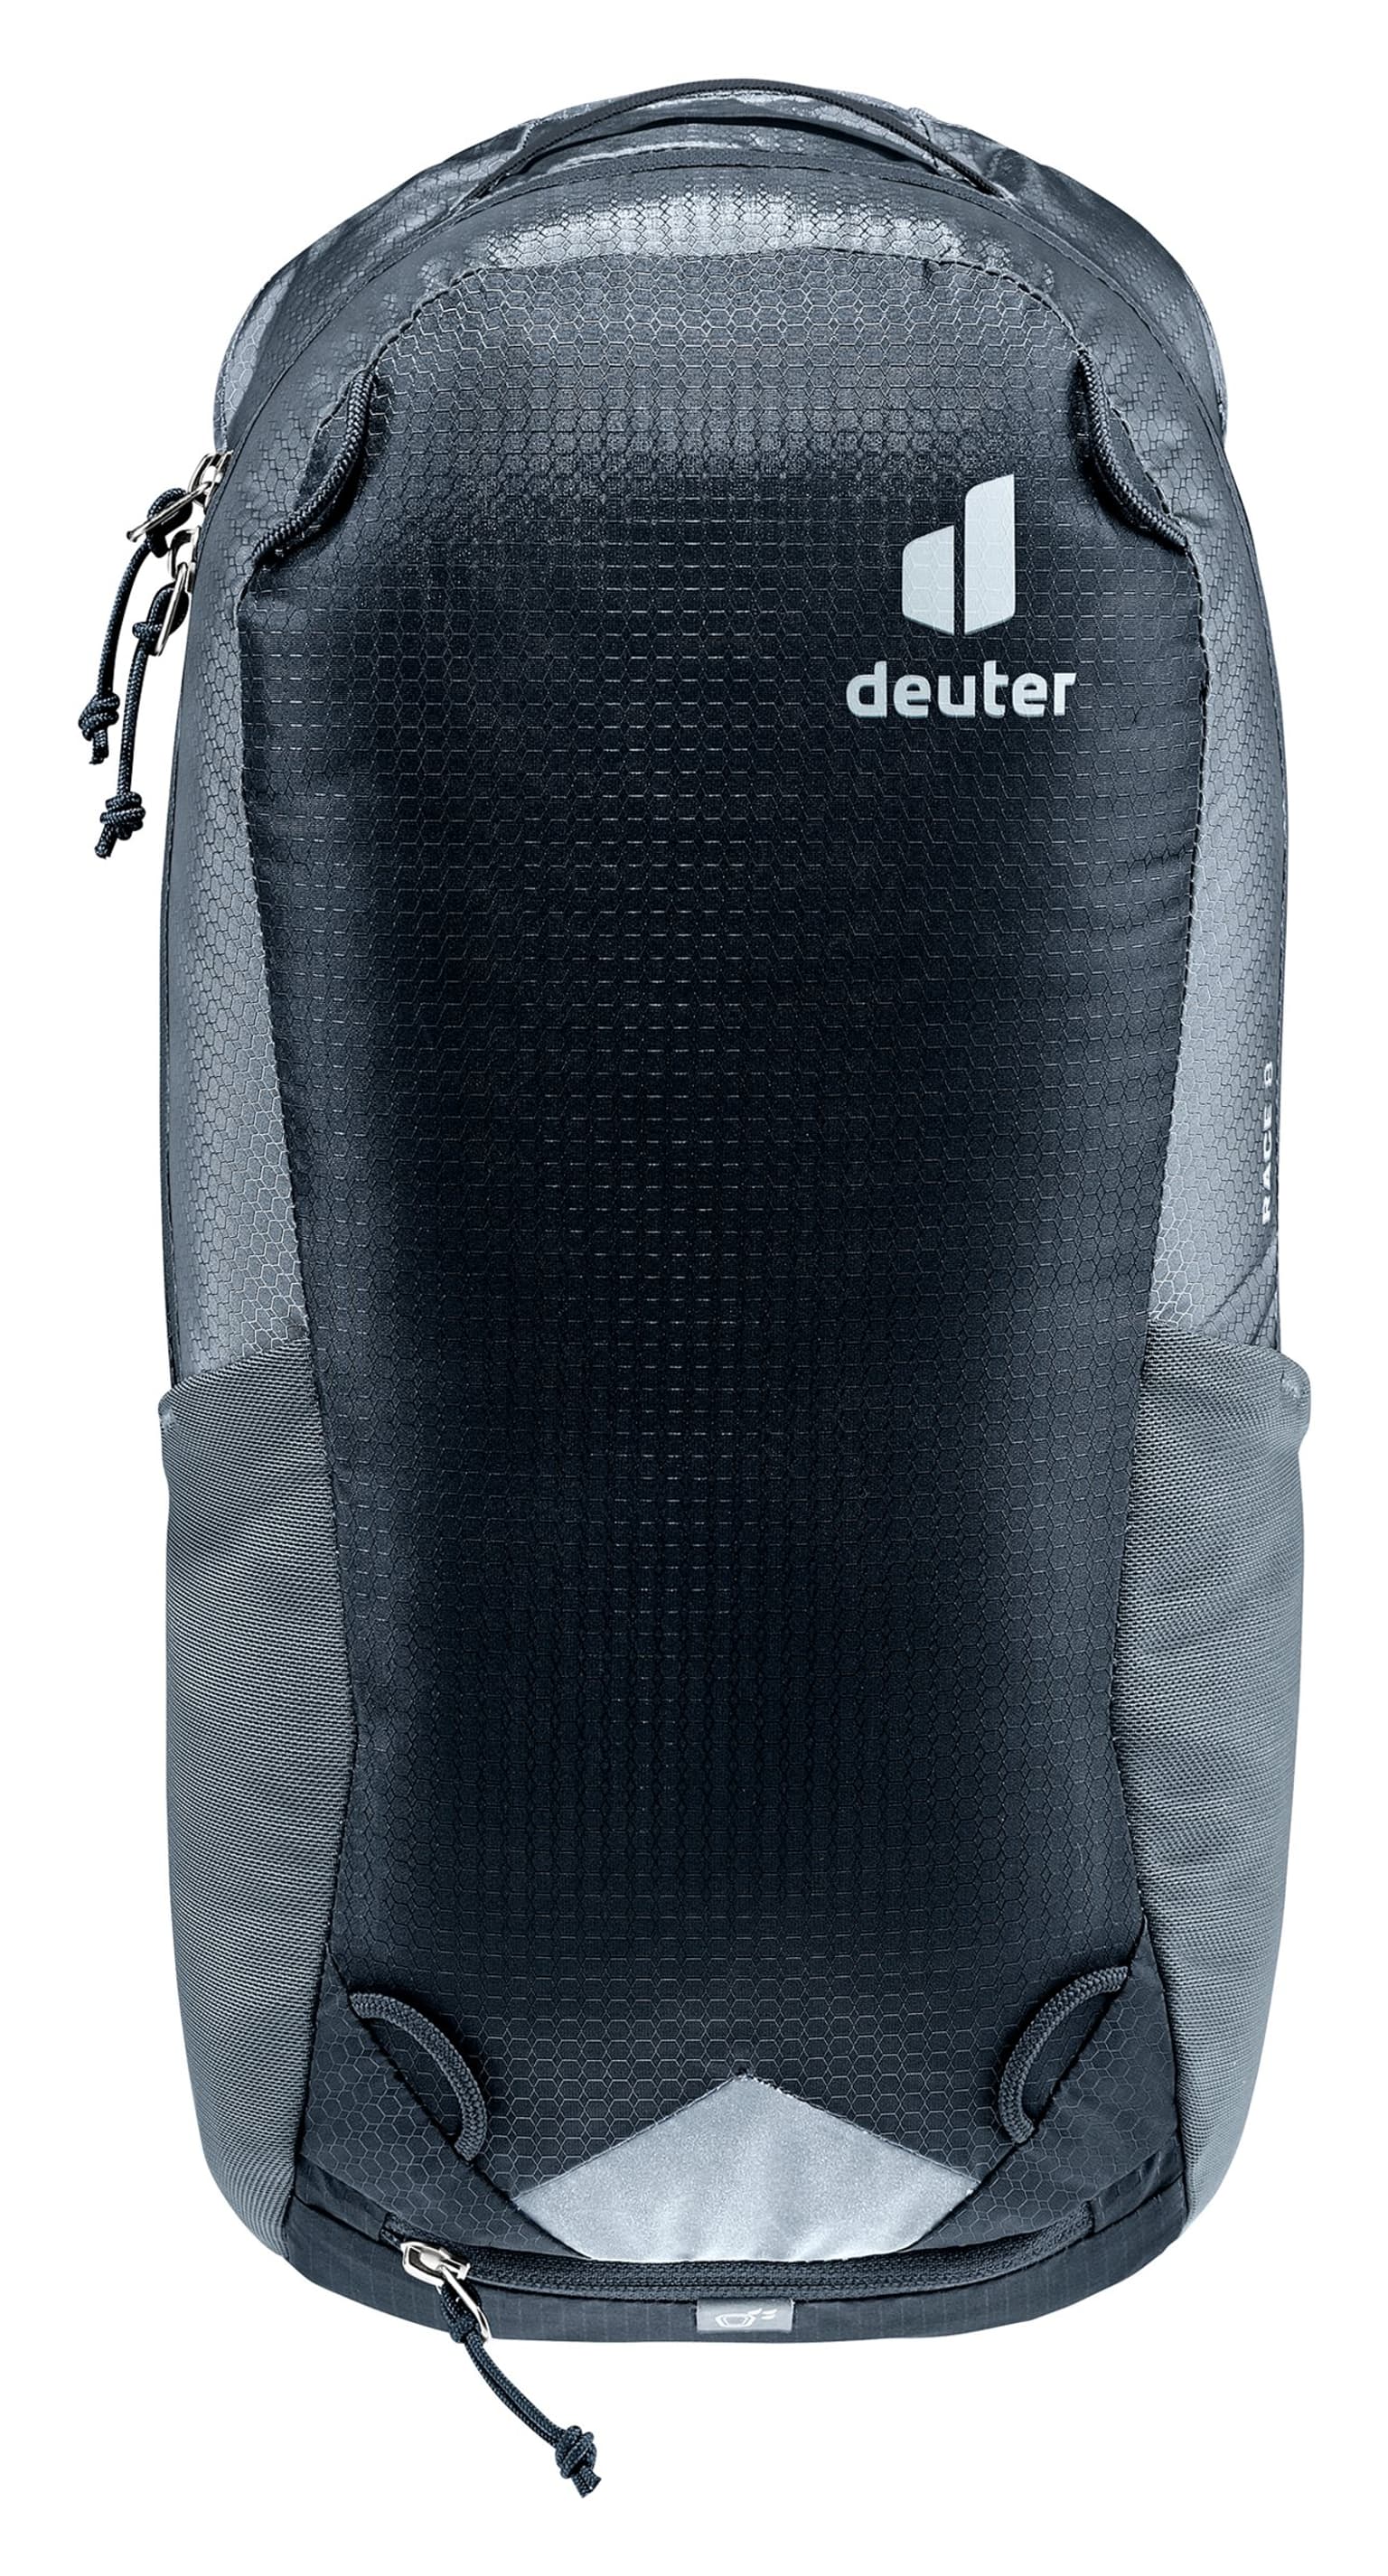 Deuter Deuter Race 8 Bikerucksack schwarz 6